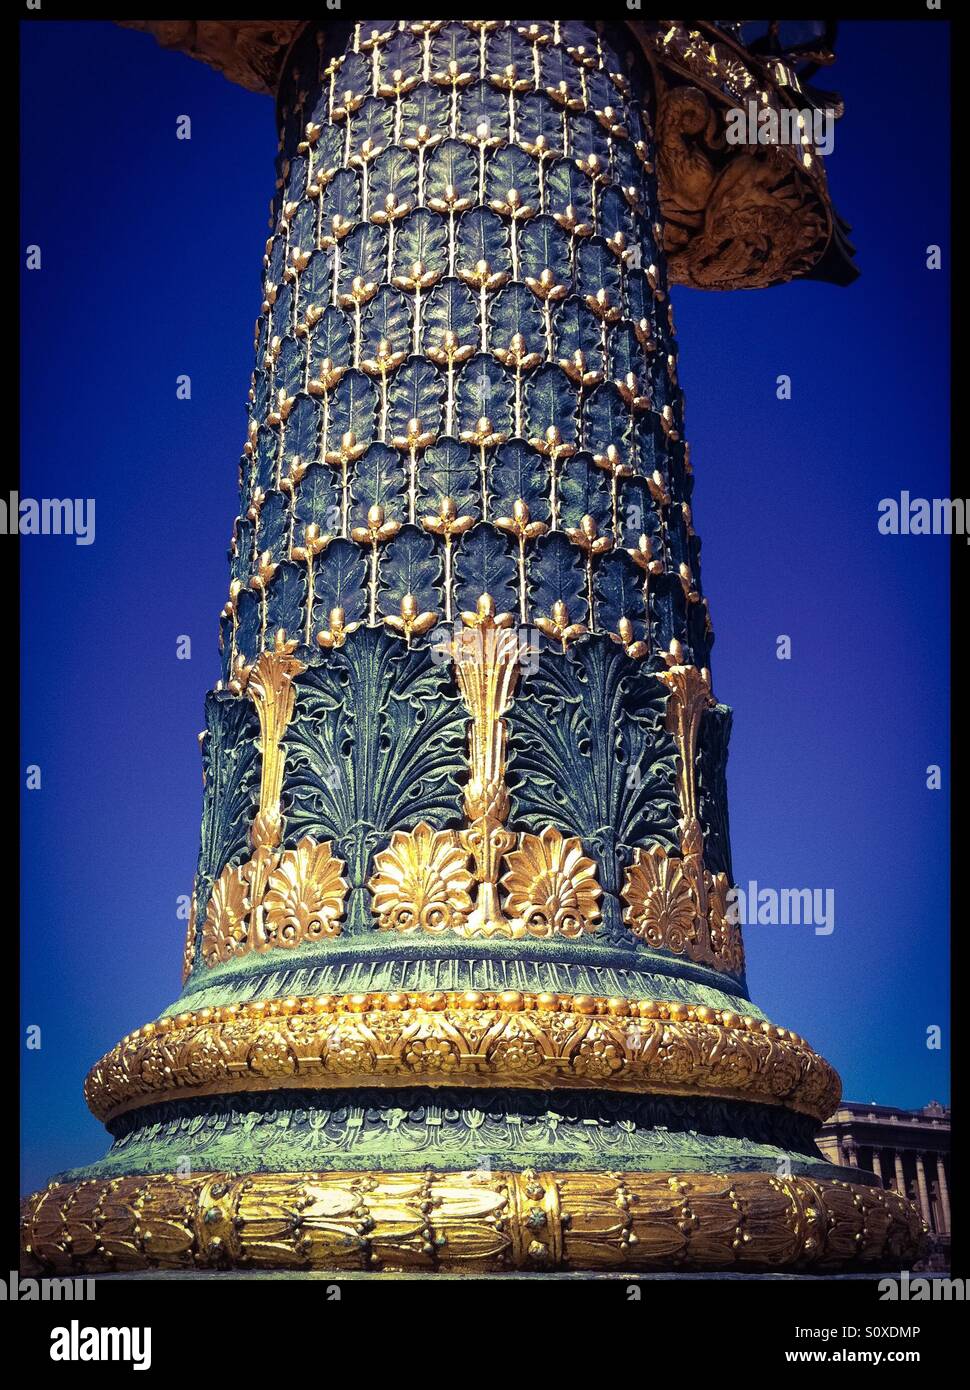 Dekorative Säule. Platz De La Concorde, Paris. Frankreich Stockfoto